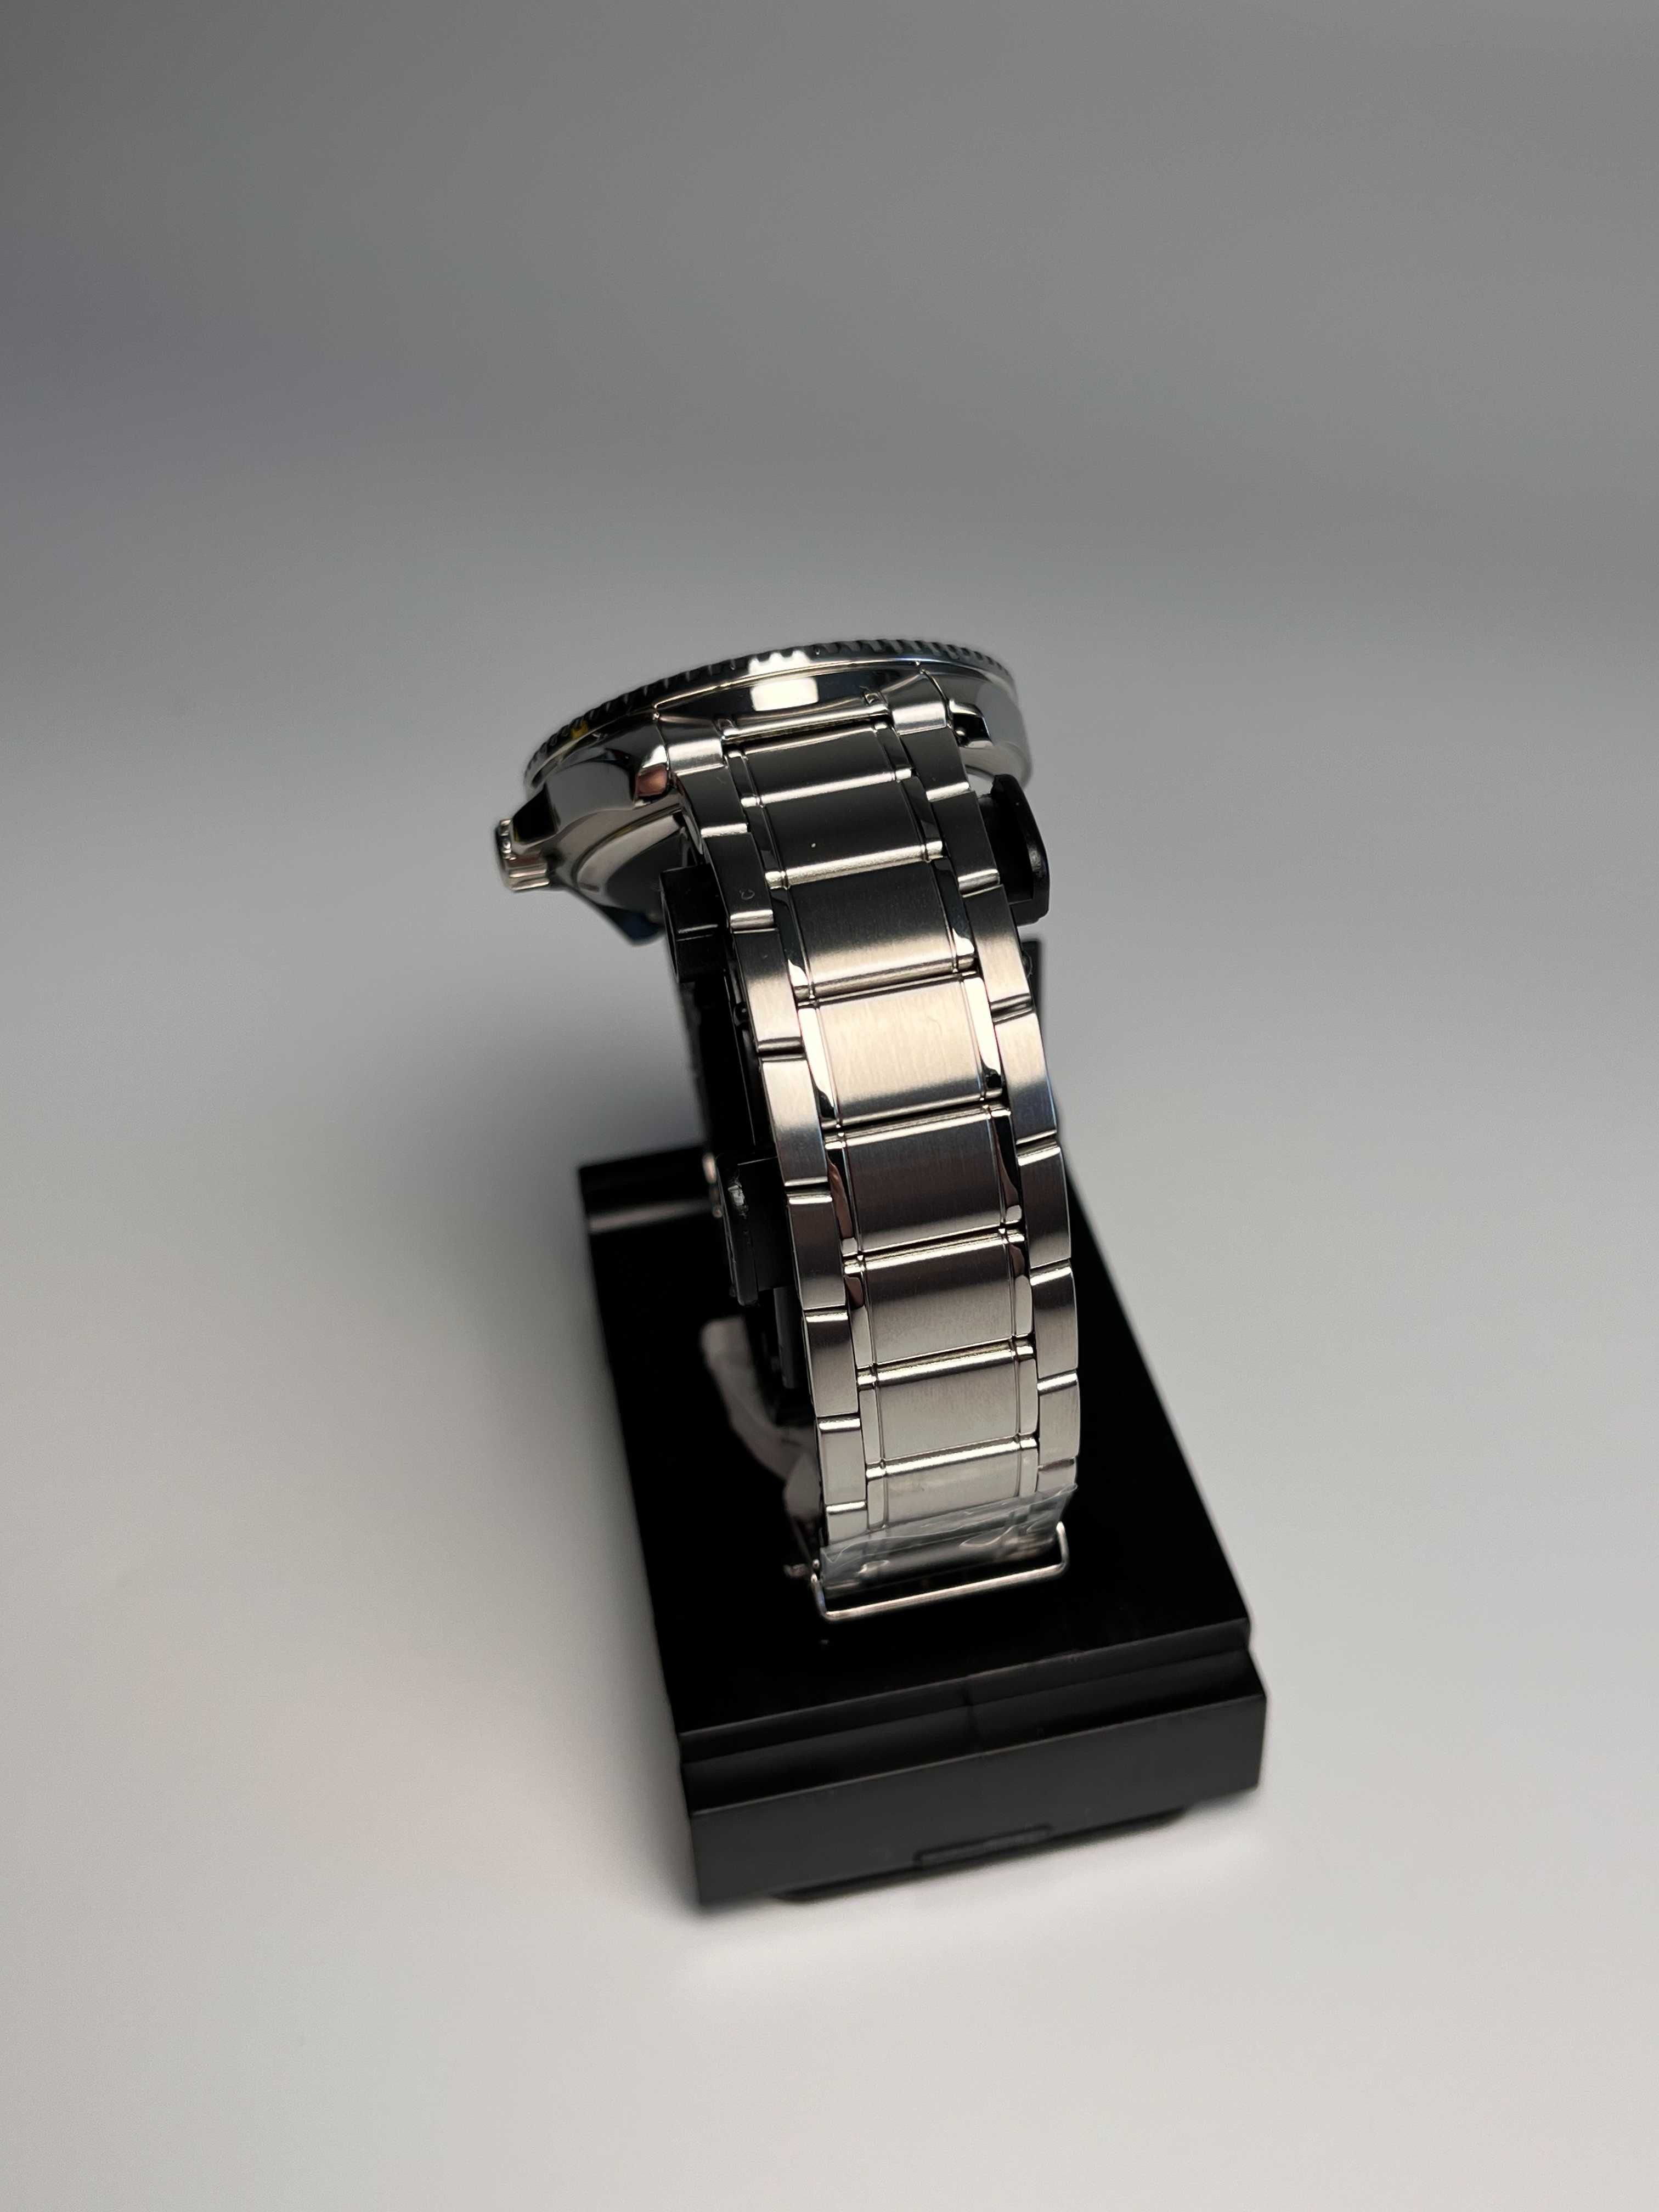 годинник Casio MDV-106DD-1A1VCF, касіо мерлін, часы касио Ø44мм